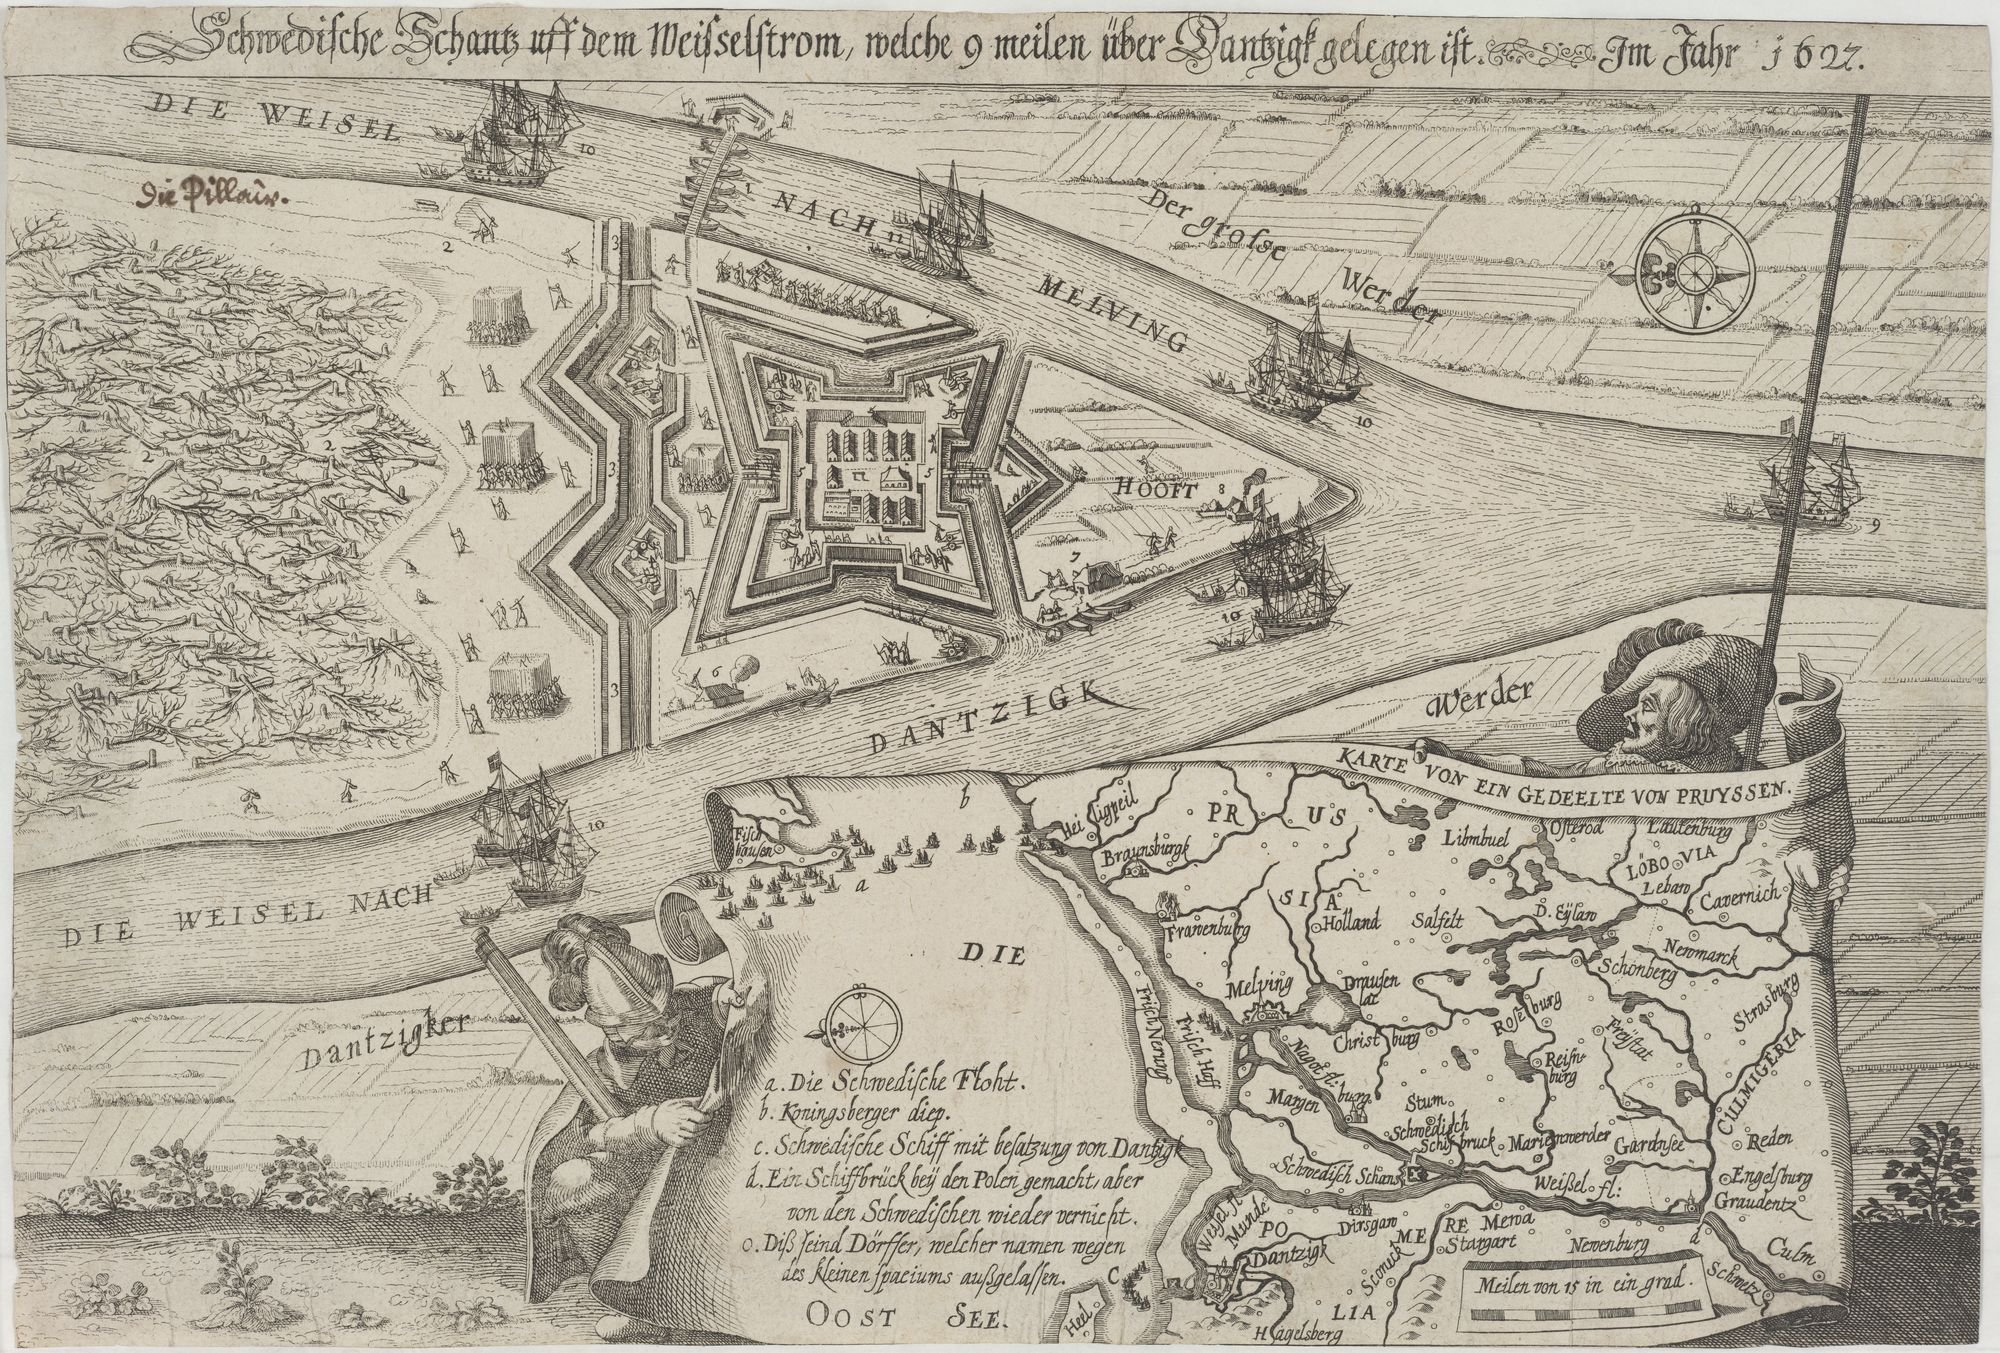 Schwedische Schantz uff dem Weißselstrom, welche 9 meilen über Dantzigk gelegen ist. Im Jahr 1627. (Kulturstiftung Sachsen-Anhalt Public Domain Mark)